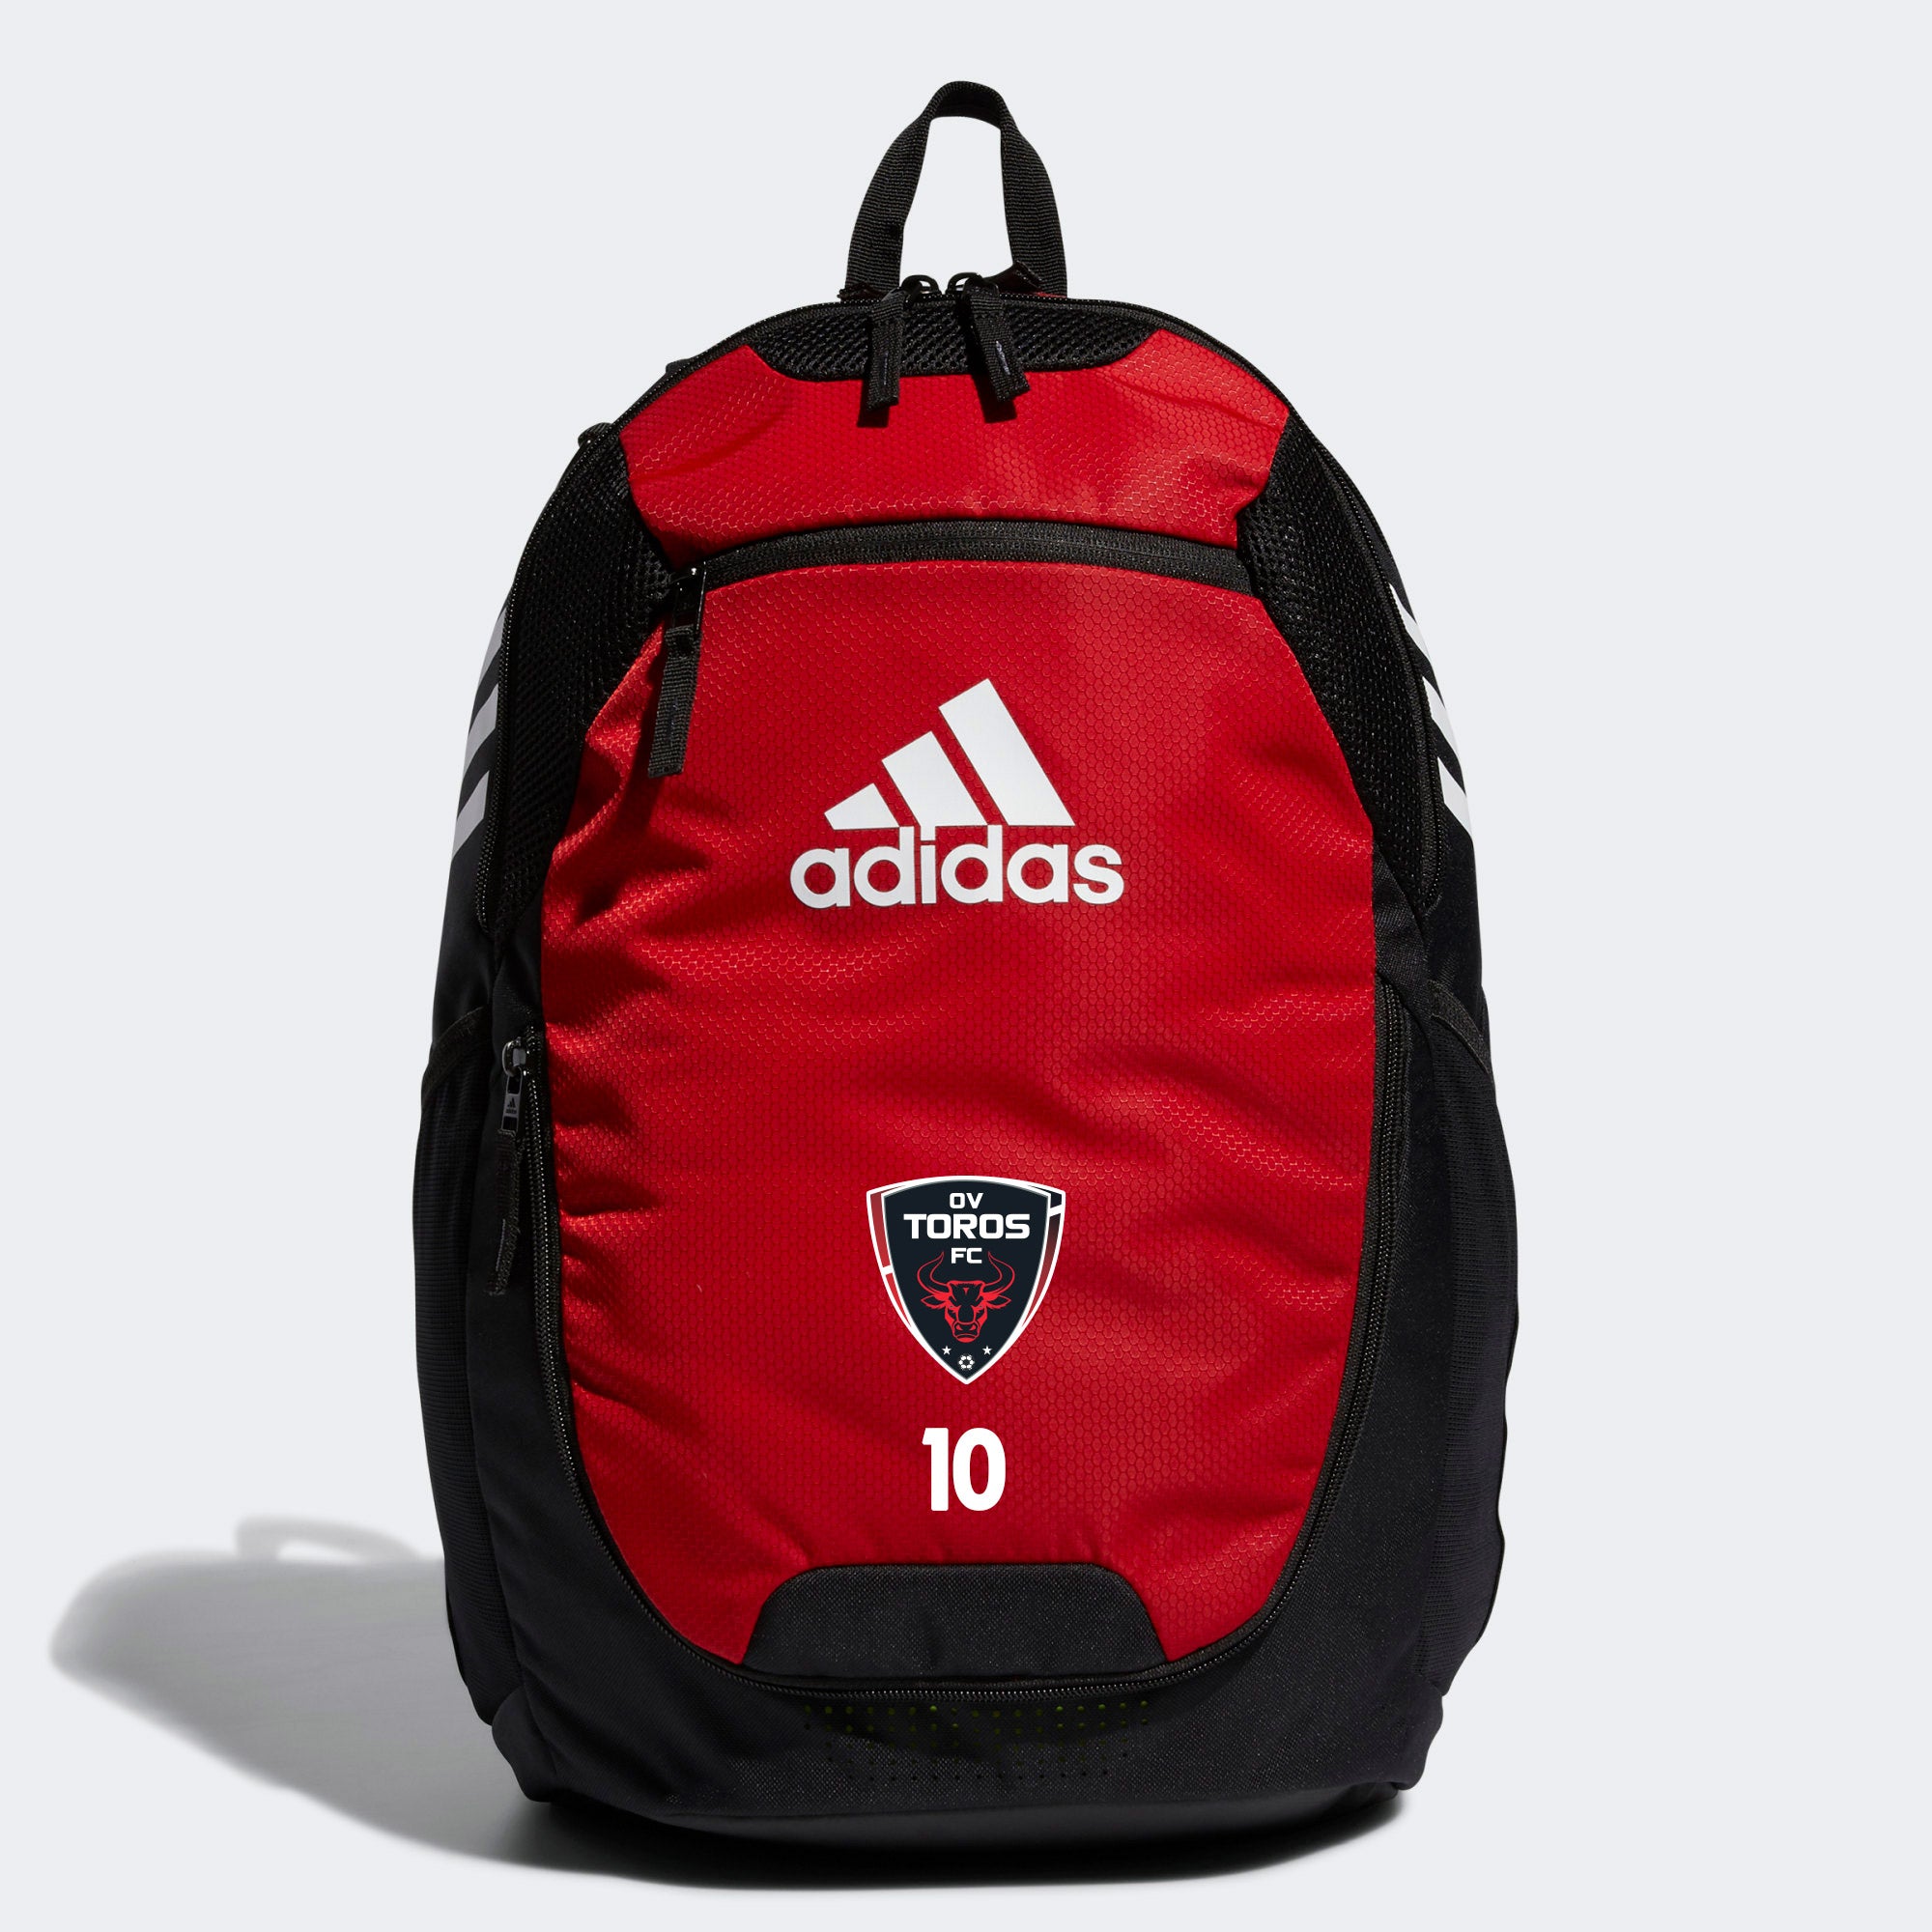 Adidas OV Toros Team Backpack